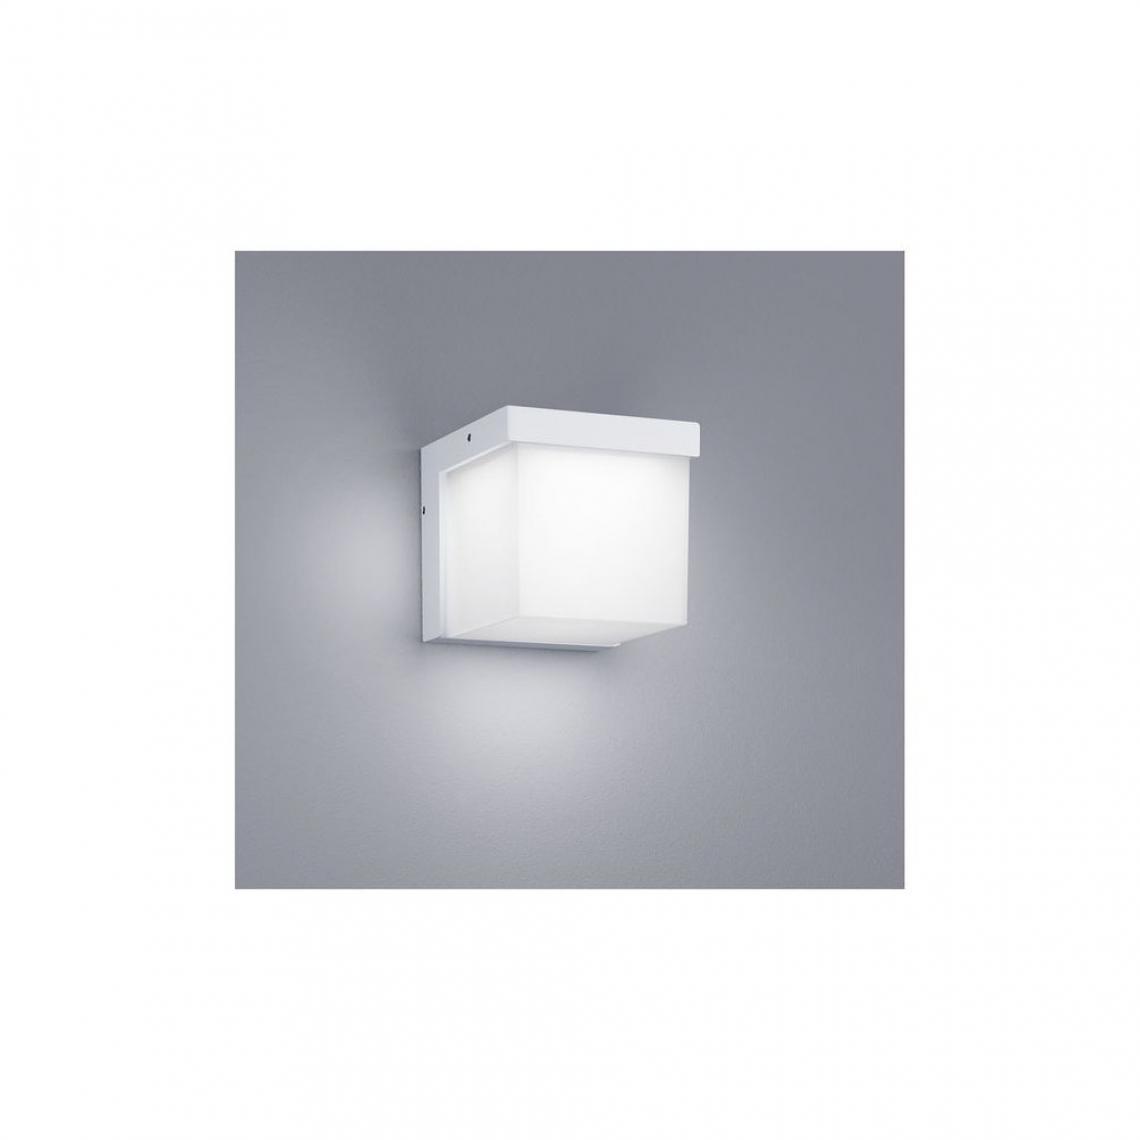 Boutica-Design - Applique Yangtze Blanc 1x3W SMD LED - Applique, hublot